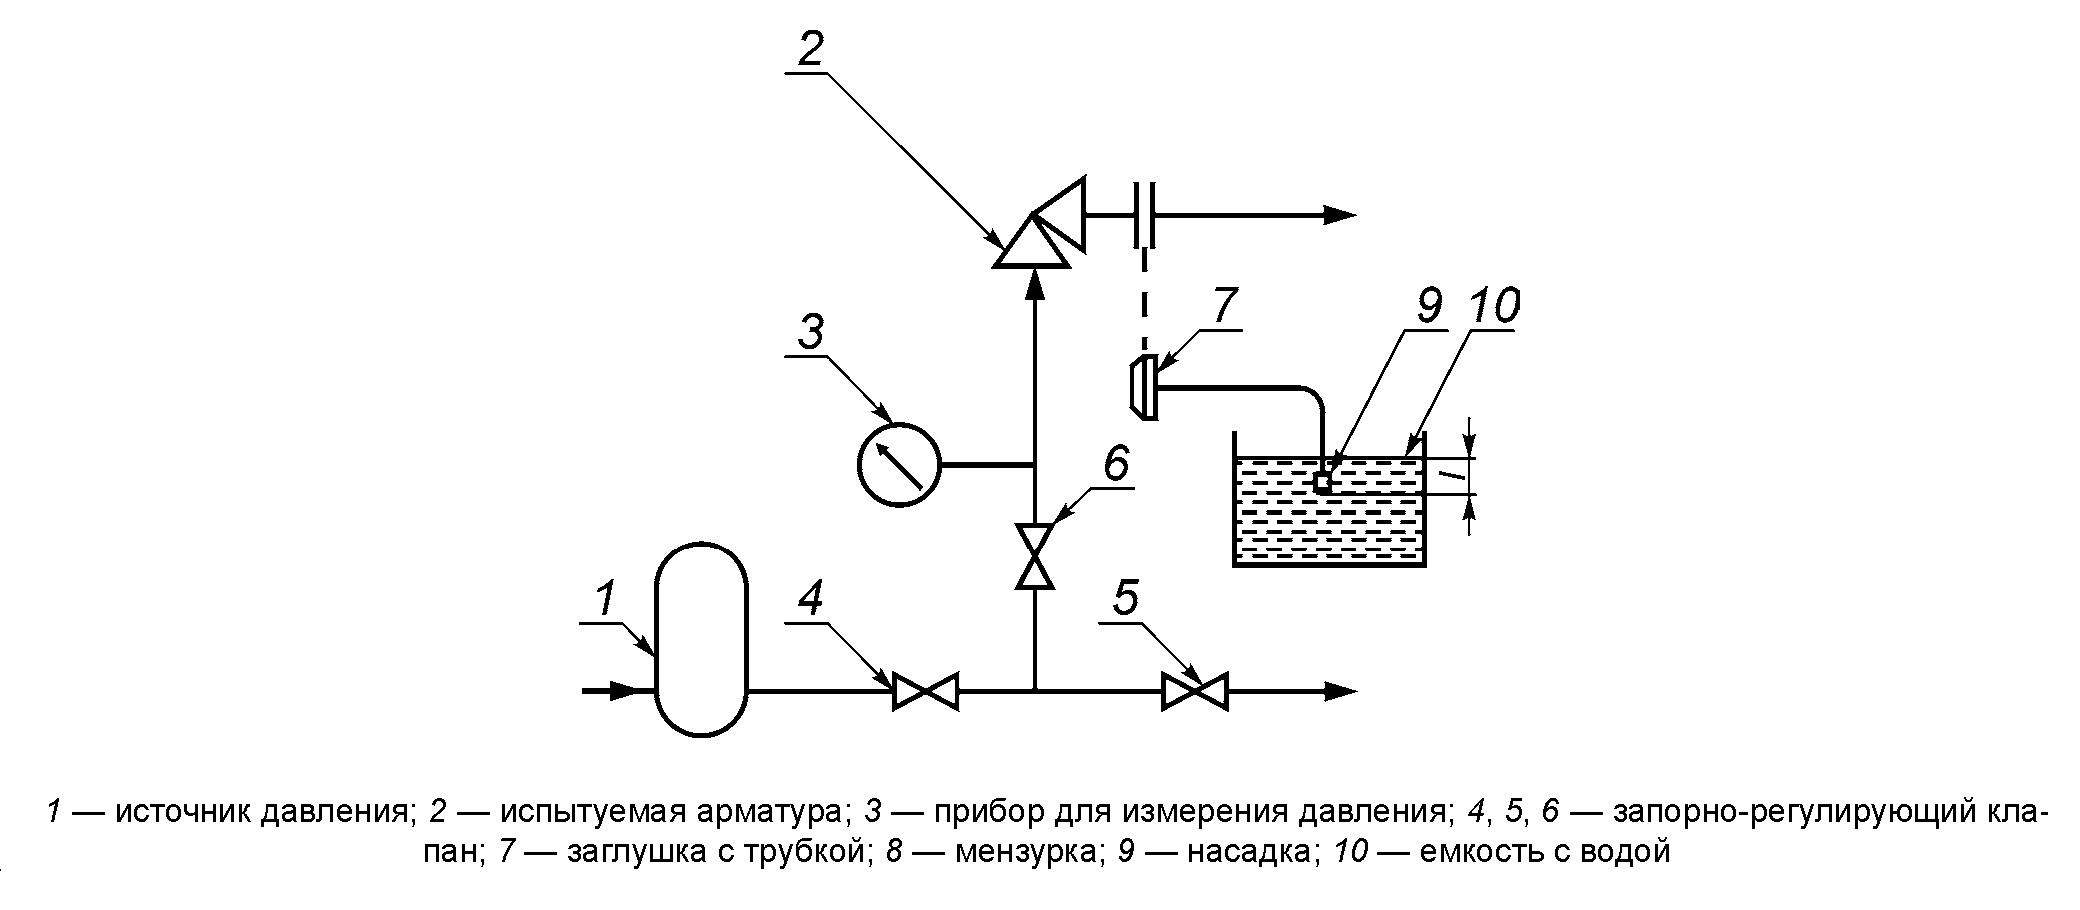 Пузырьковый метод испытания трубопроводной арматуры